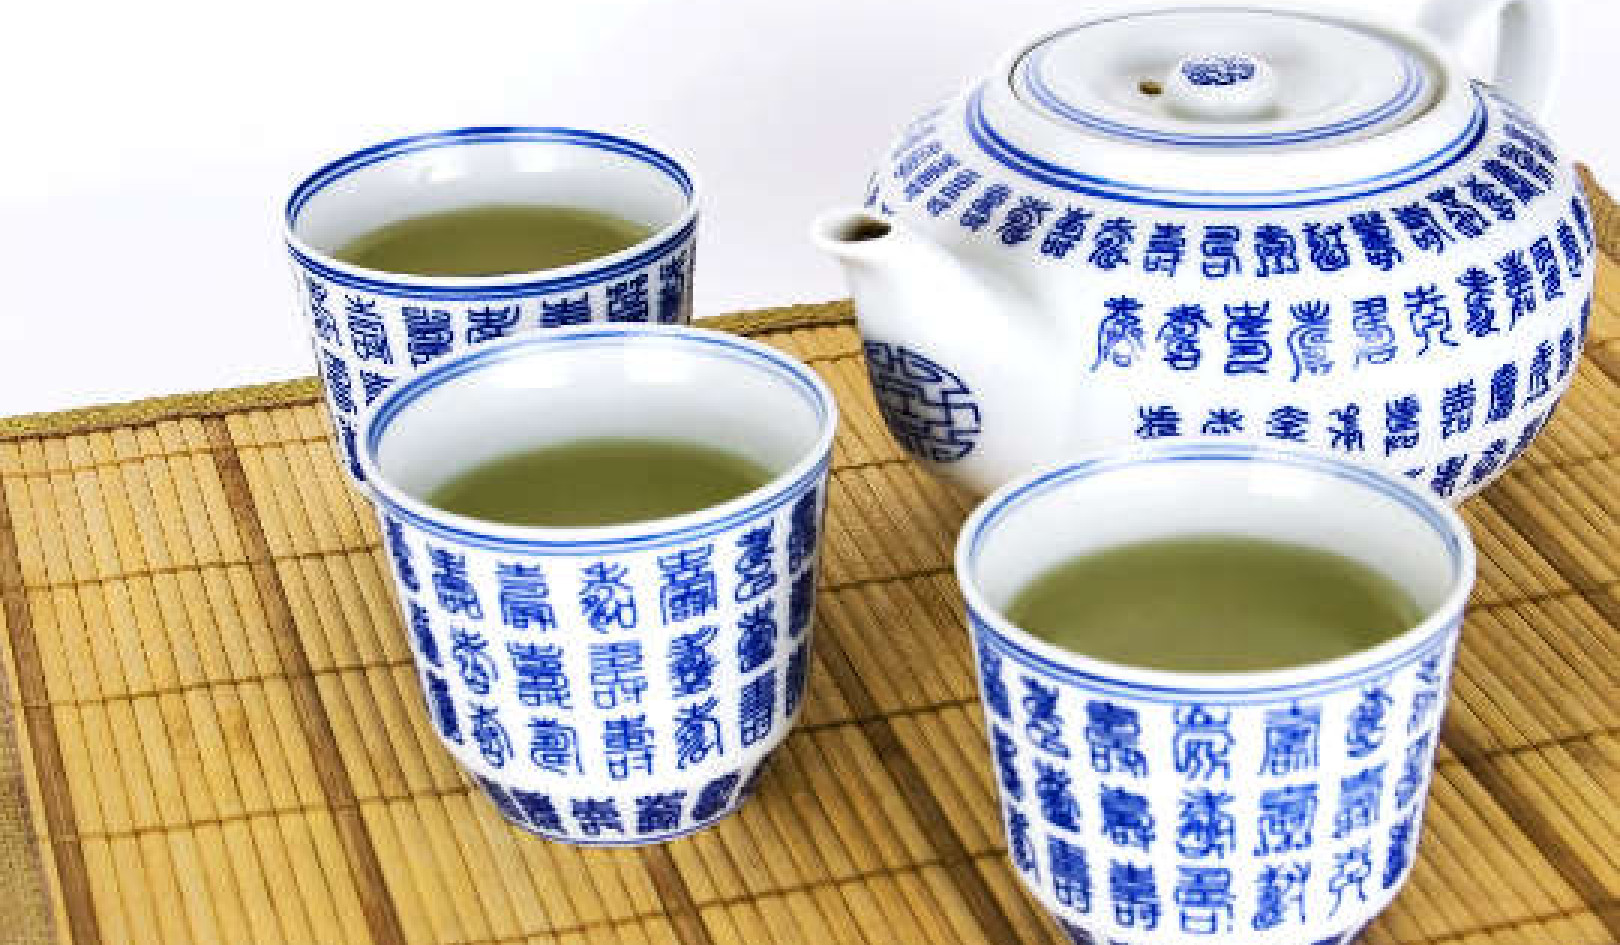 Maaari bang Masama ang Green Tea sa Iyong Kalusugan?